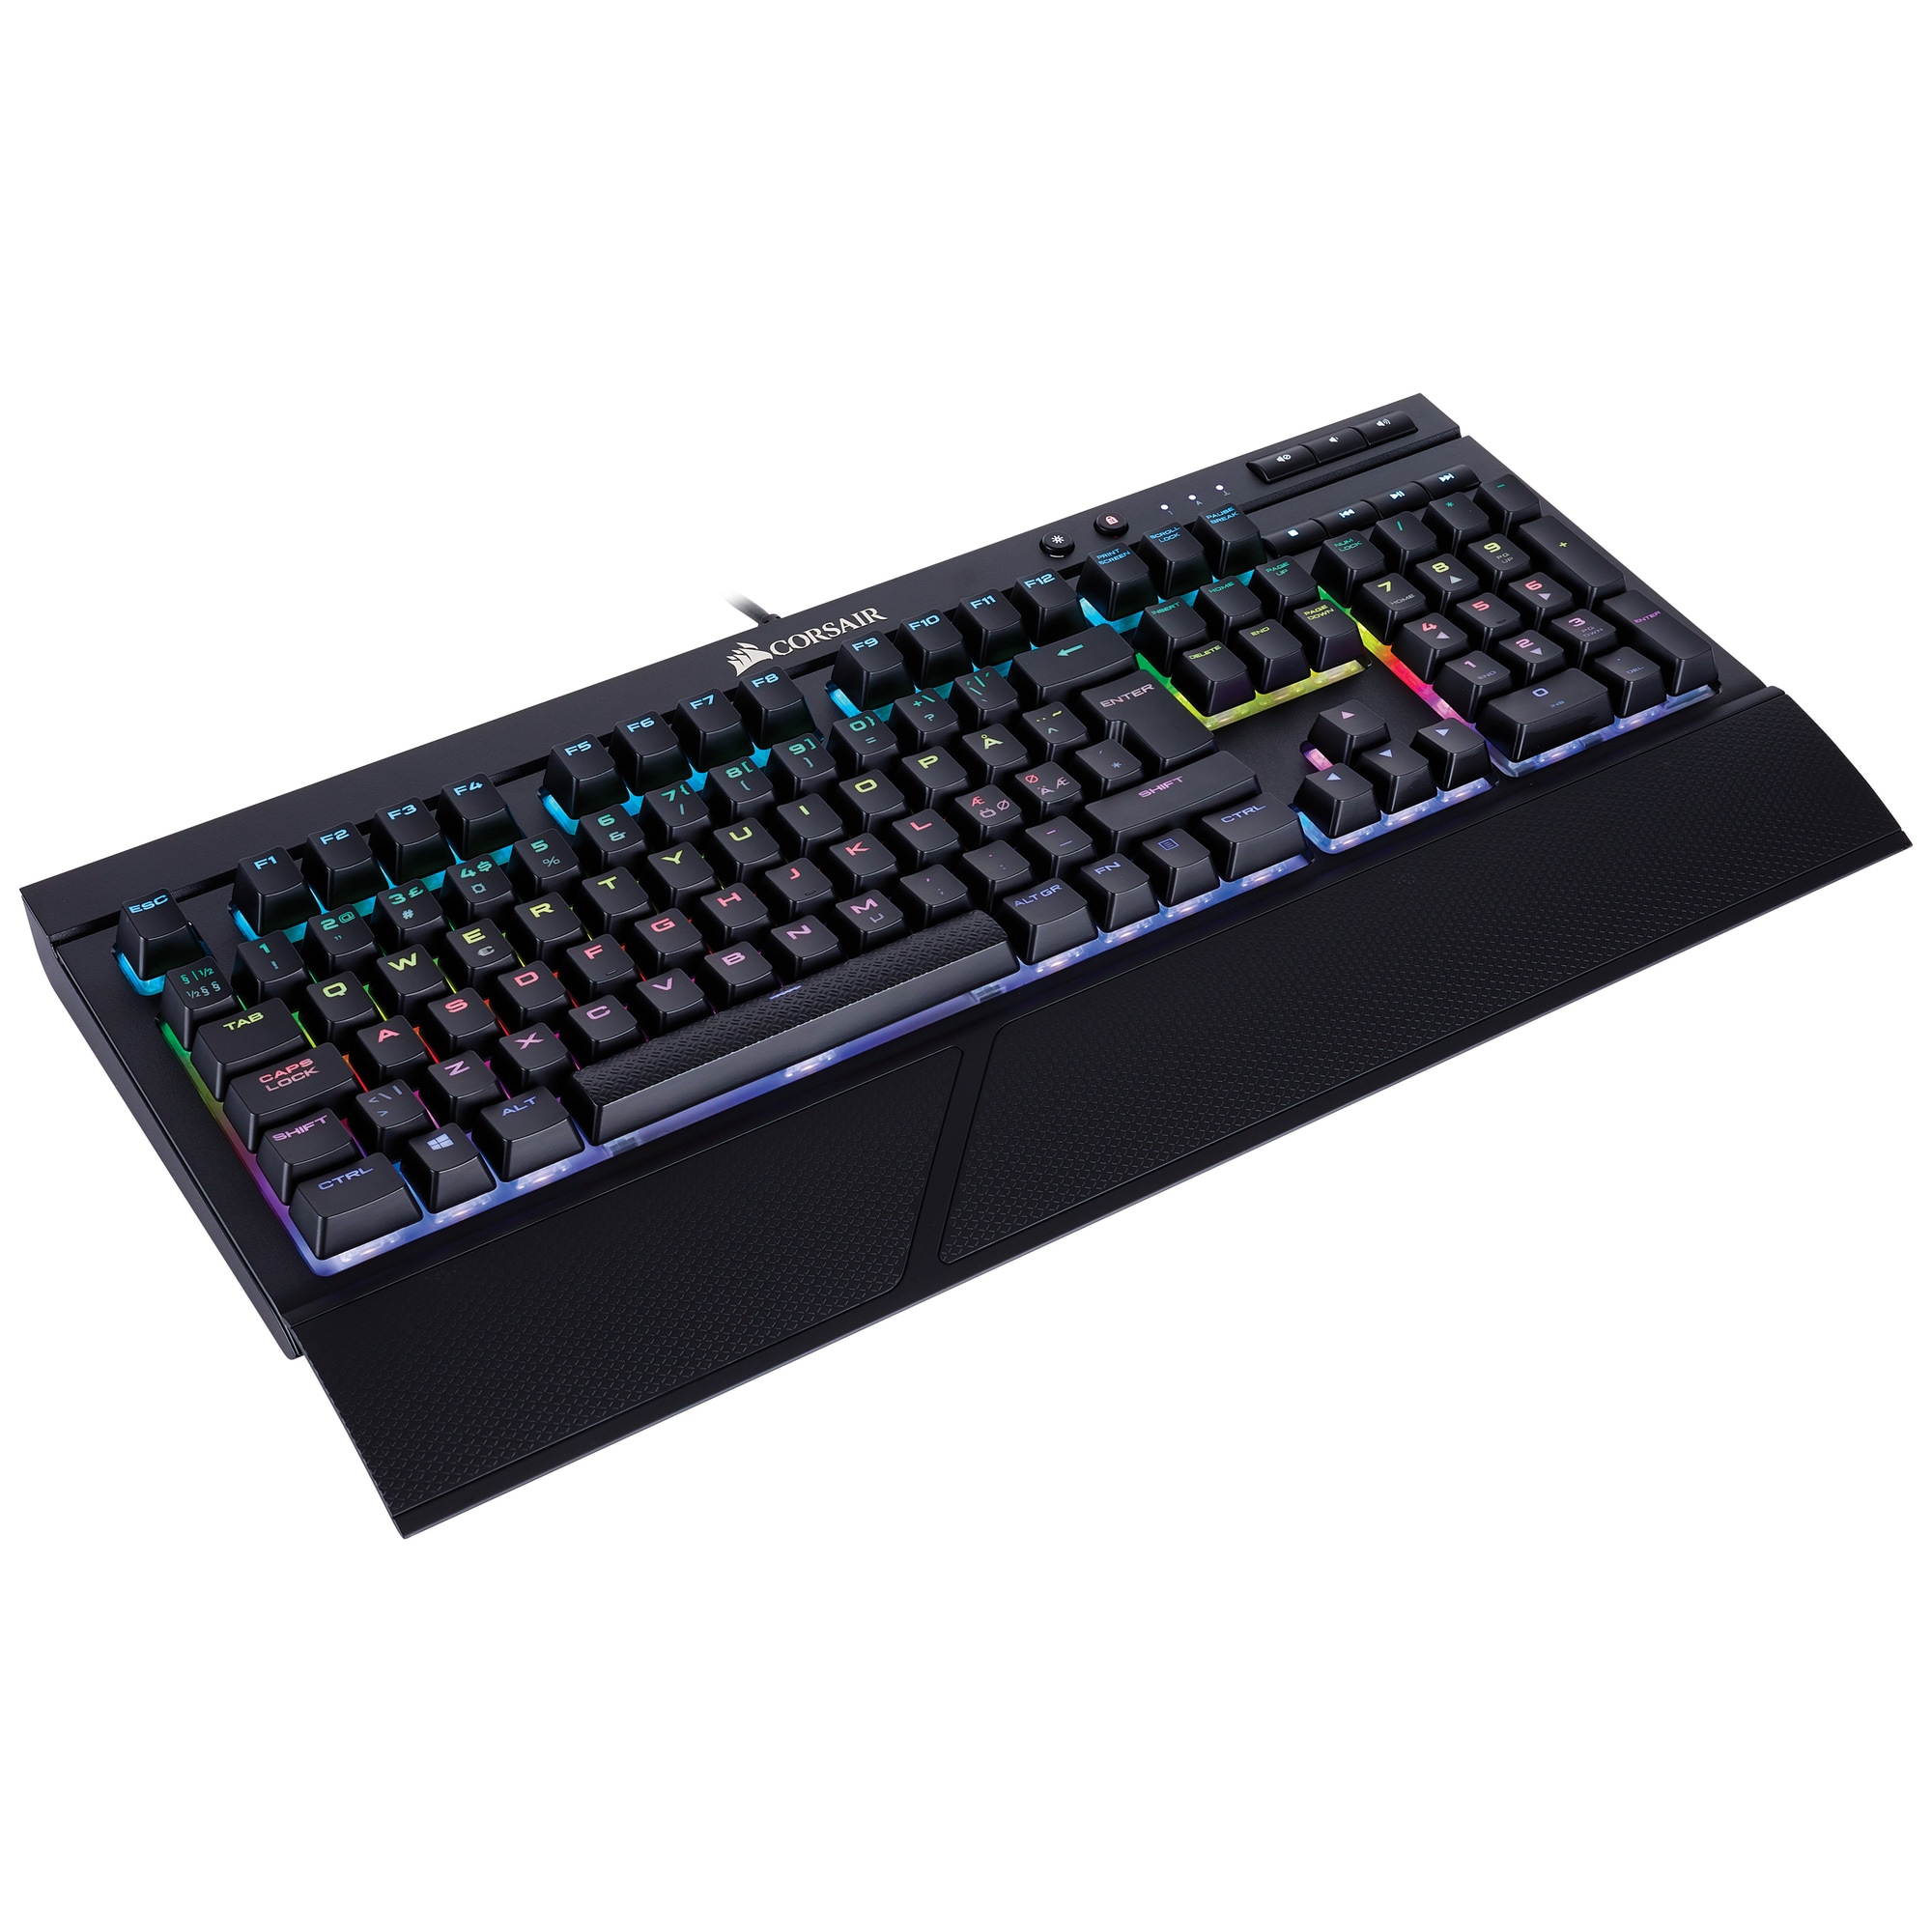 Corsair K68 RGB mekanisk gamingtastatur - Elkjøp